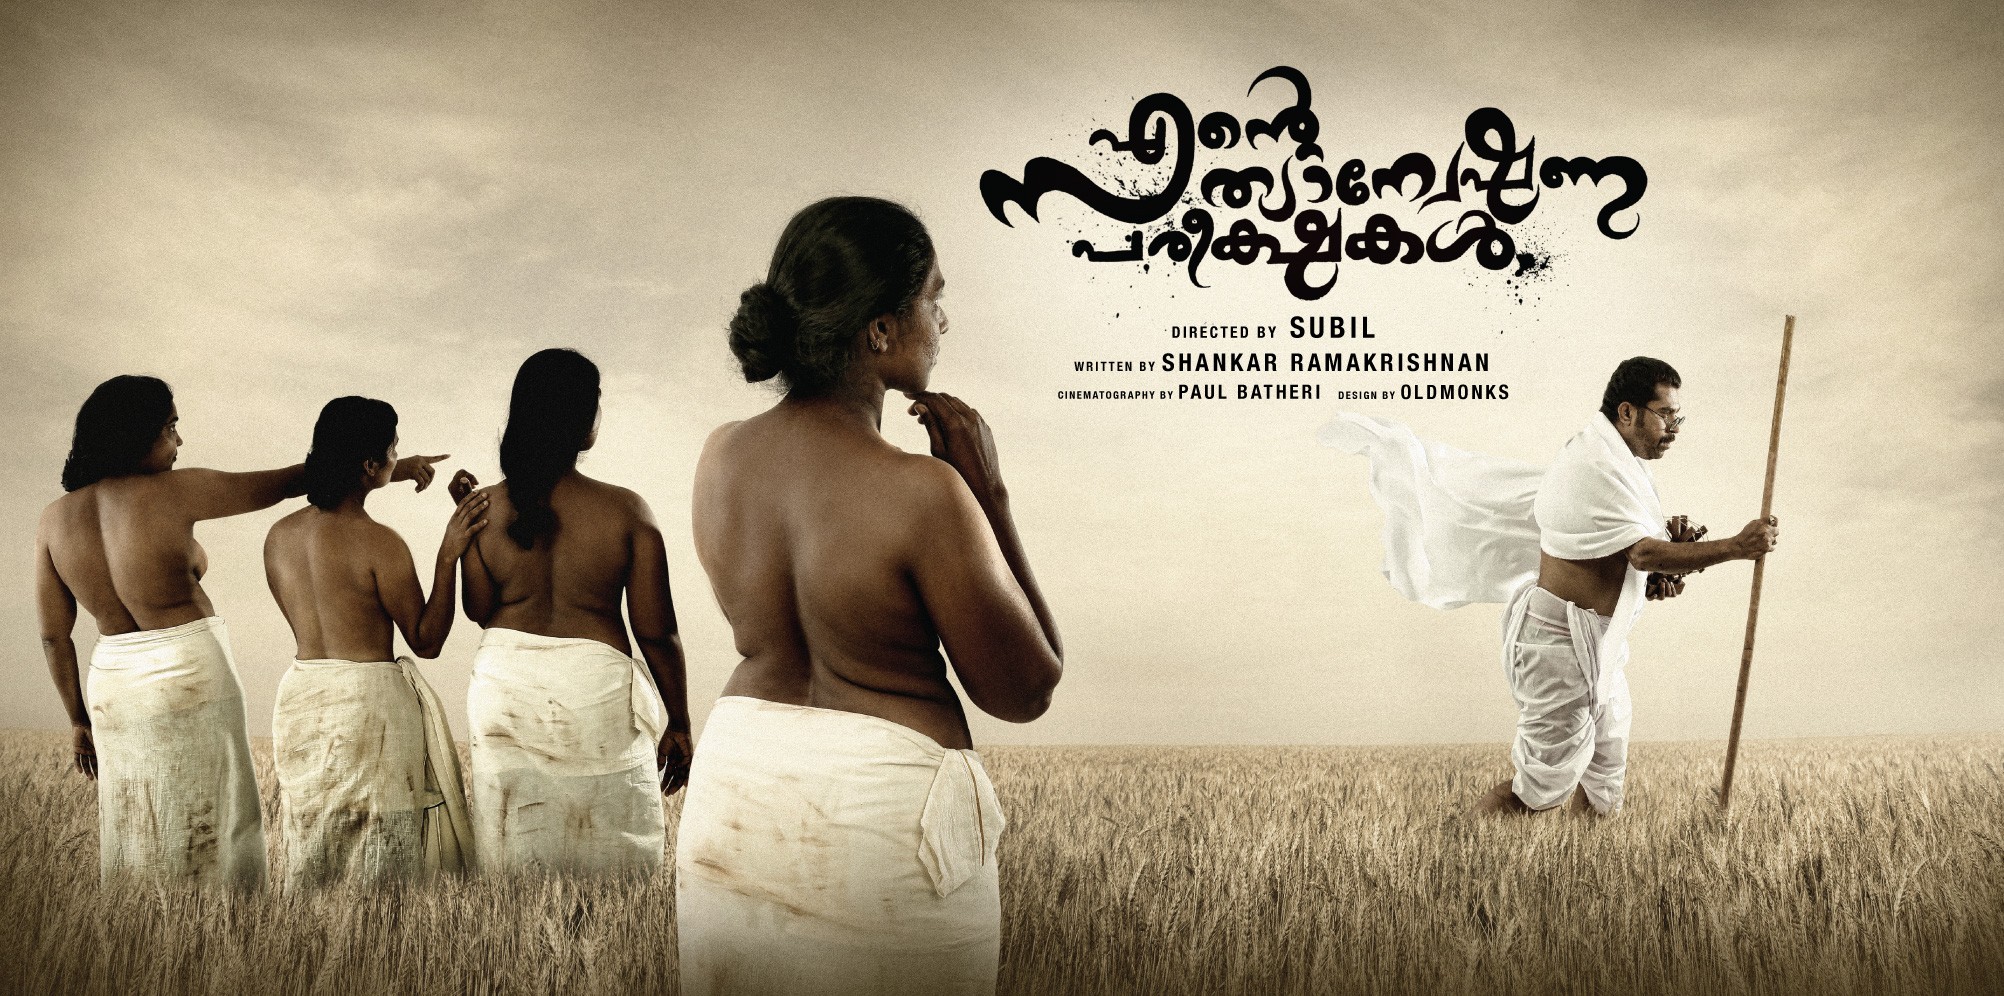 Mega Sized Movie Poster Image for Ente Sathyaneshana Pareekhakal (#4 of 4)